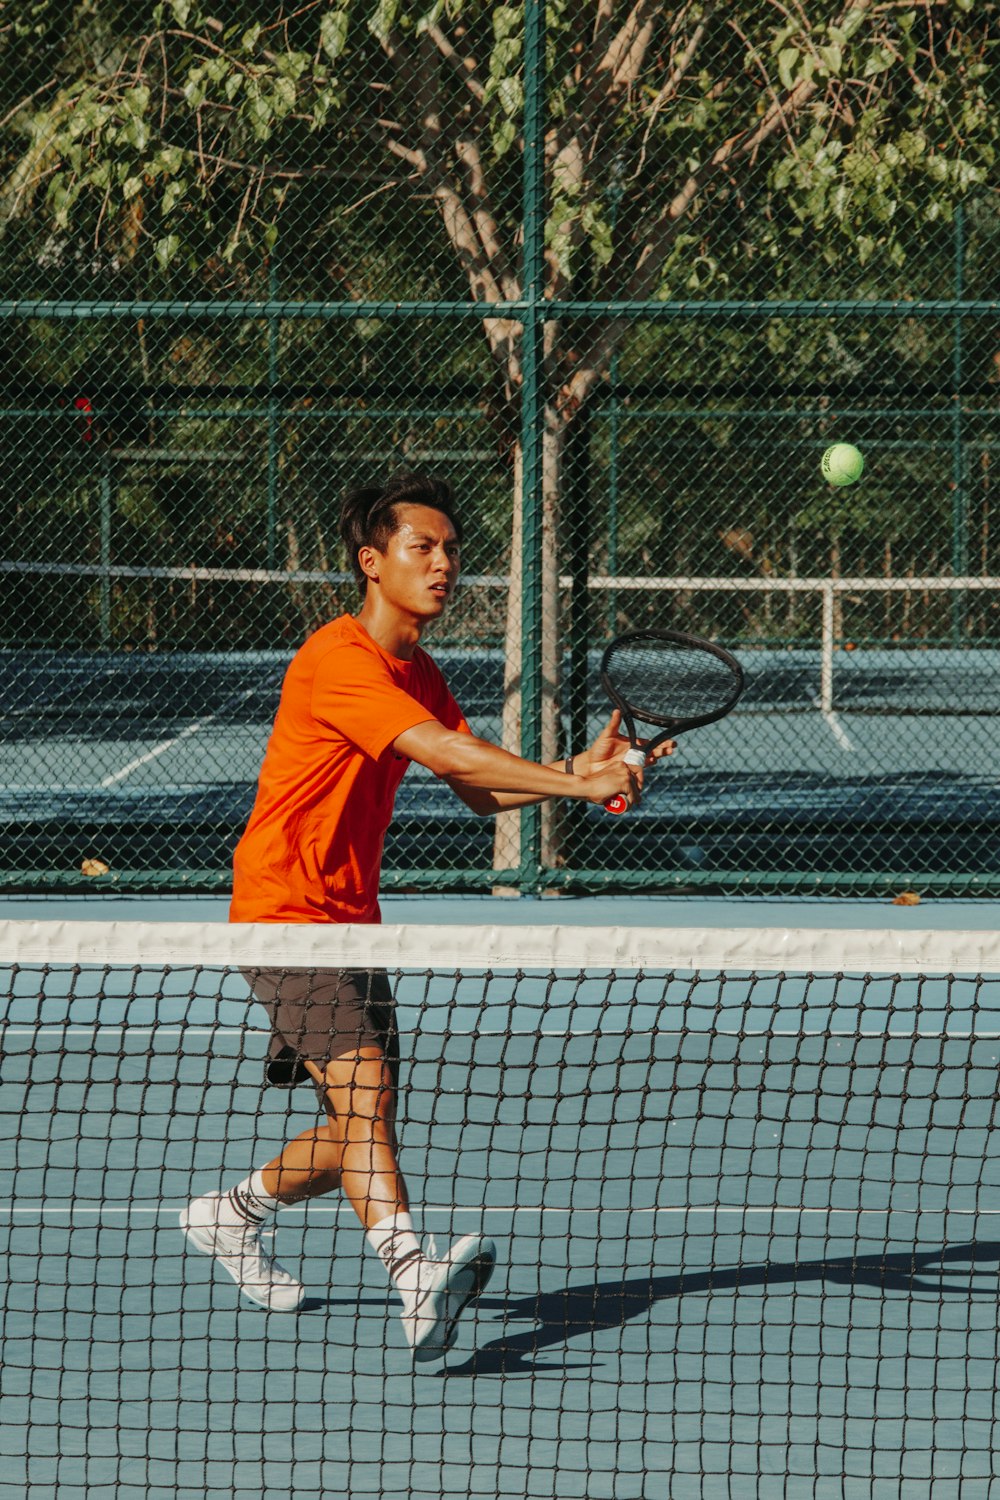 Un homme balance une raquette de tennis sur une balle